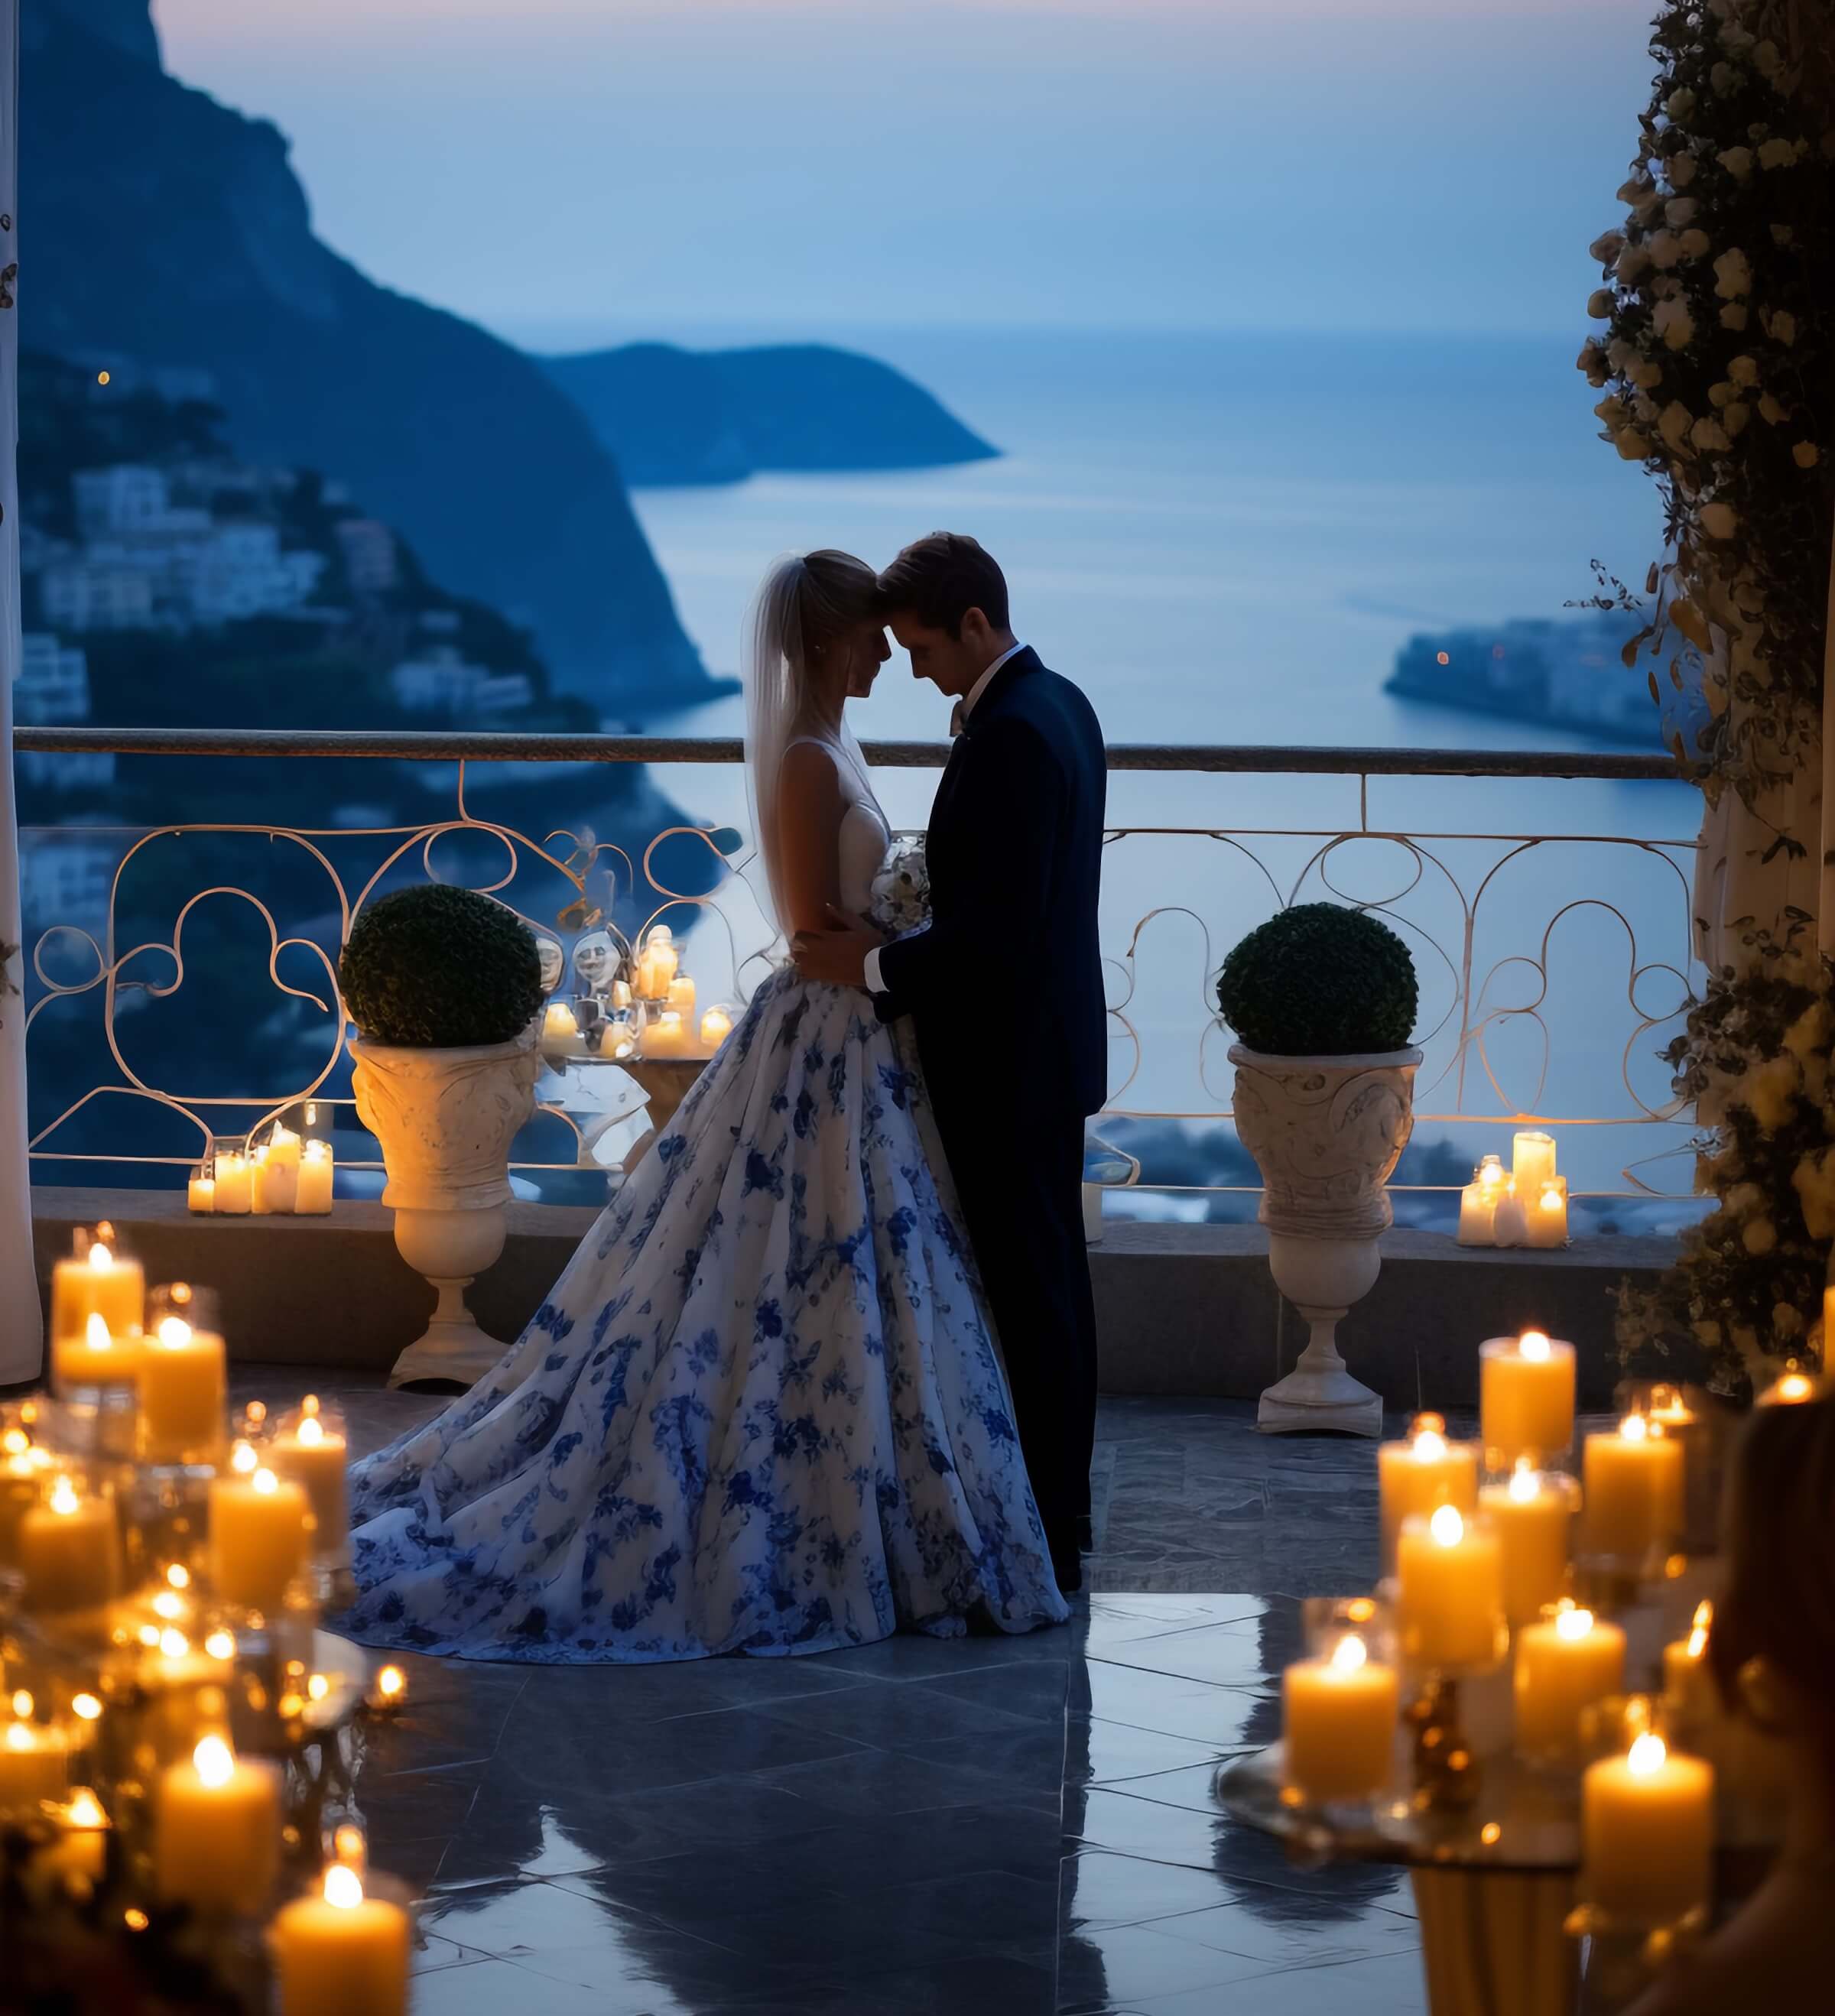 Sposi in una location addobbata per le nozze con lo sfondo del mare